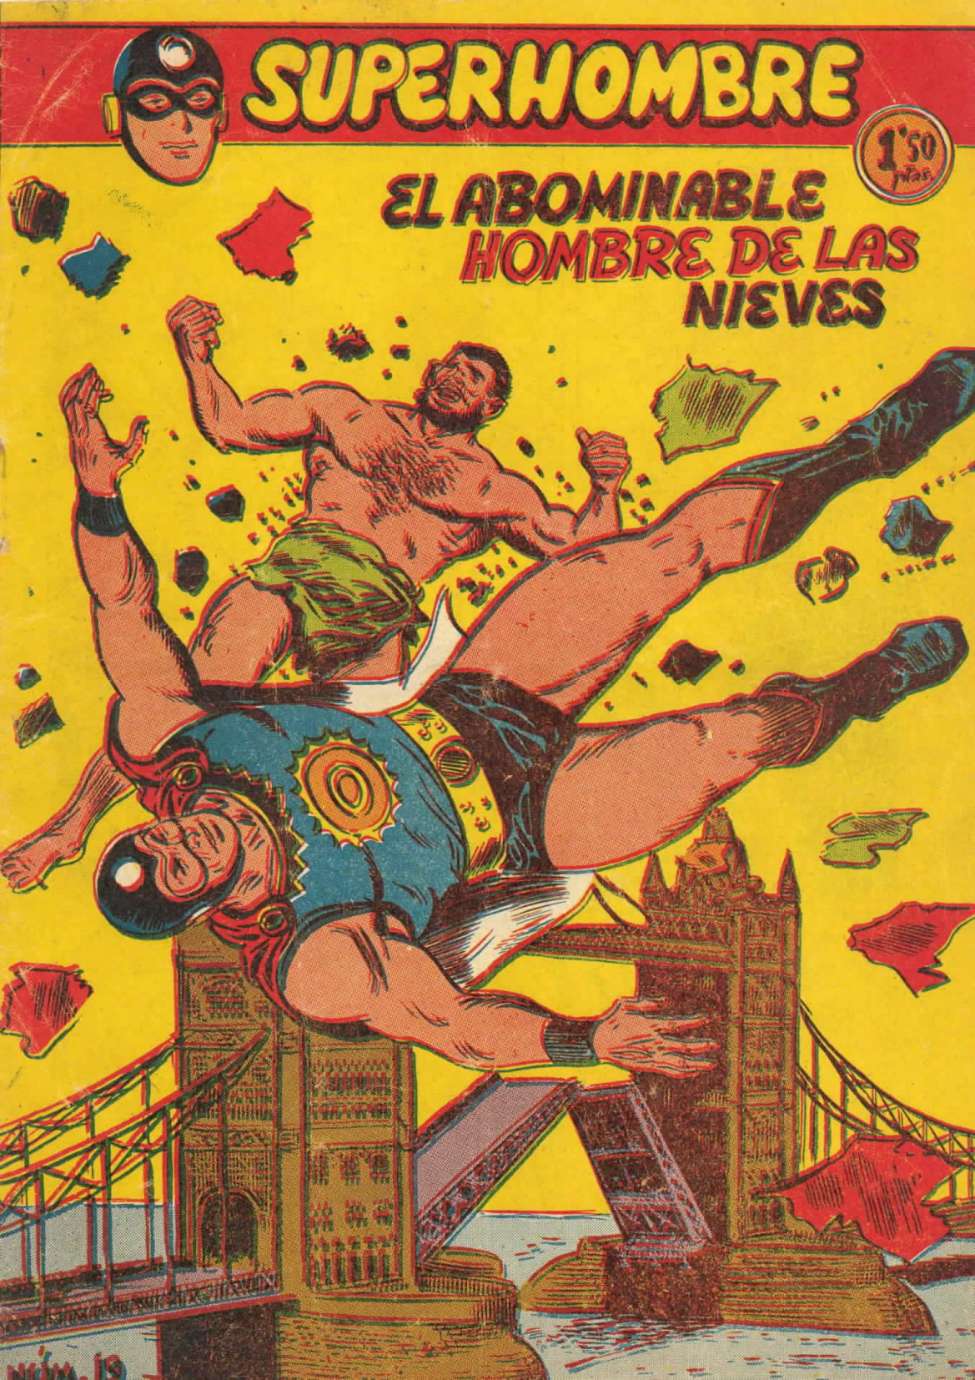 Comic Book Cover For SuperHombre 19 El abominable Hombre de las Nieves